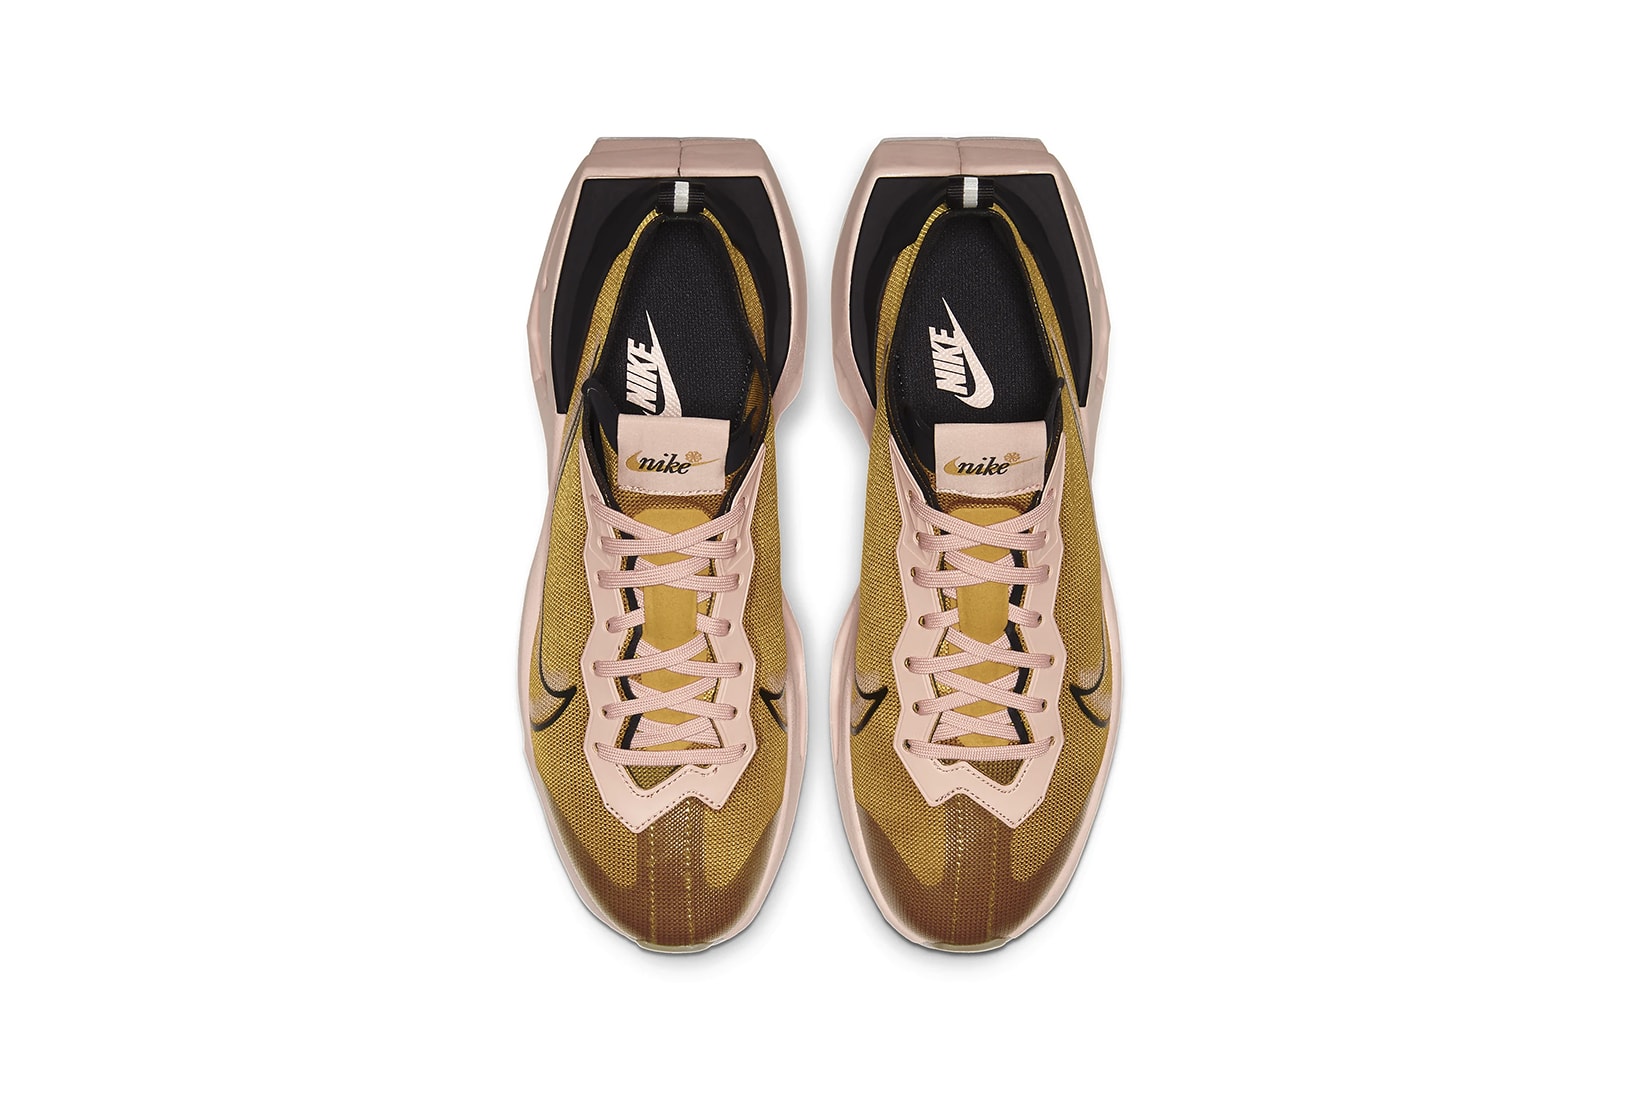 nike zoom x vista grind womens sneakers gold pink grey black shoes footwear sneakerhead